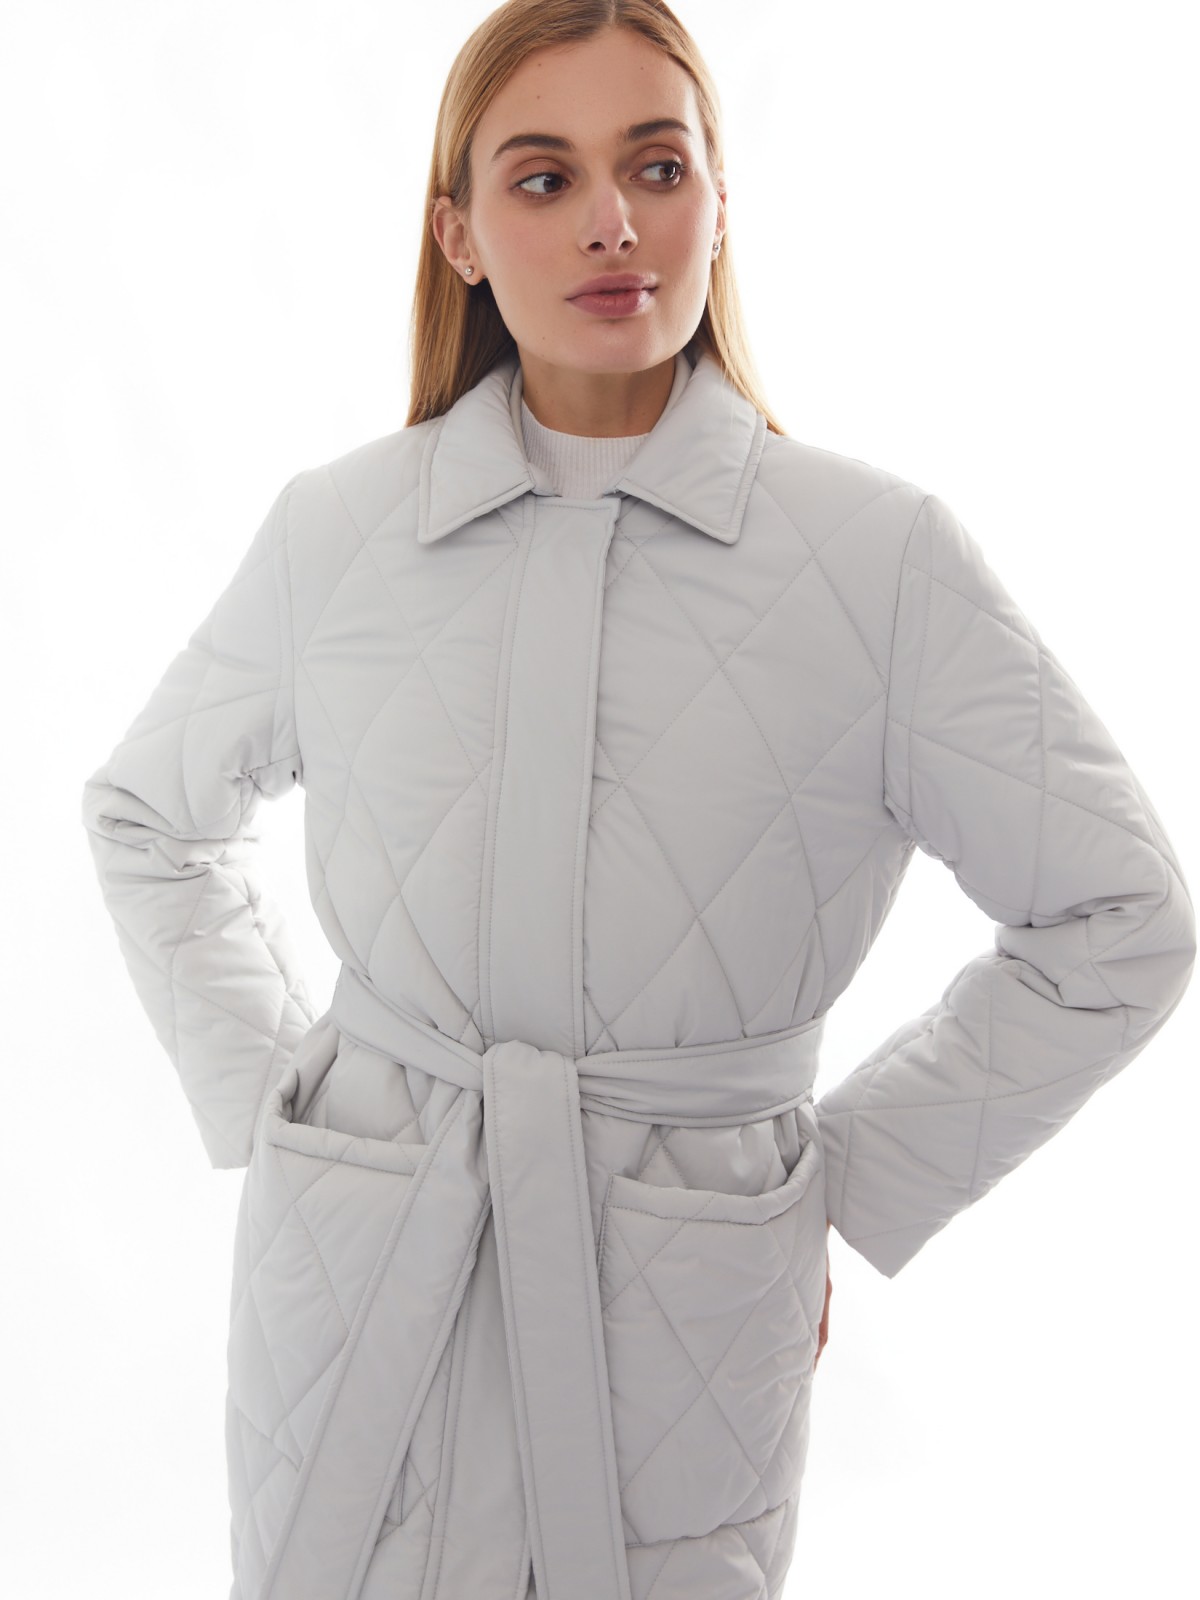 Утеплённое пальто с отложным воротником и поясом zolla 024125202094, цвет светло-серый, размер XS - фото 3